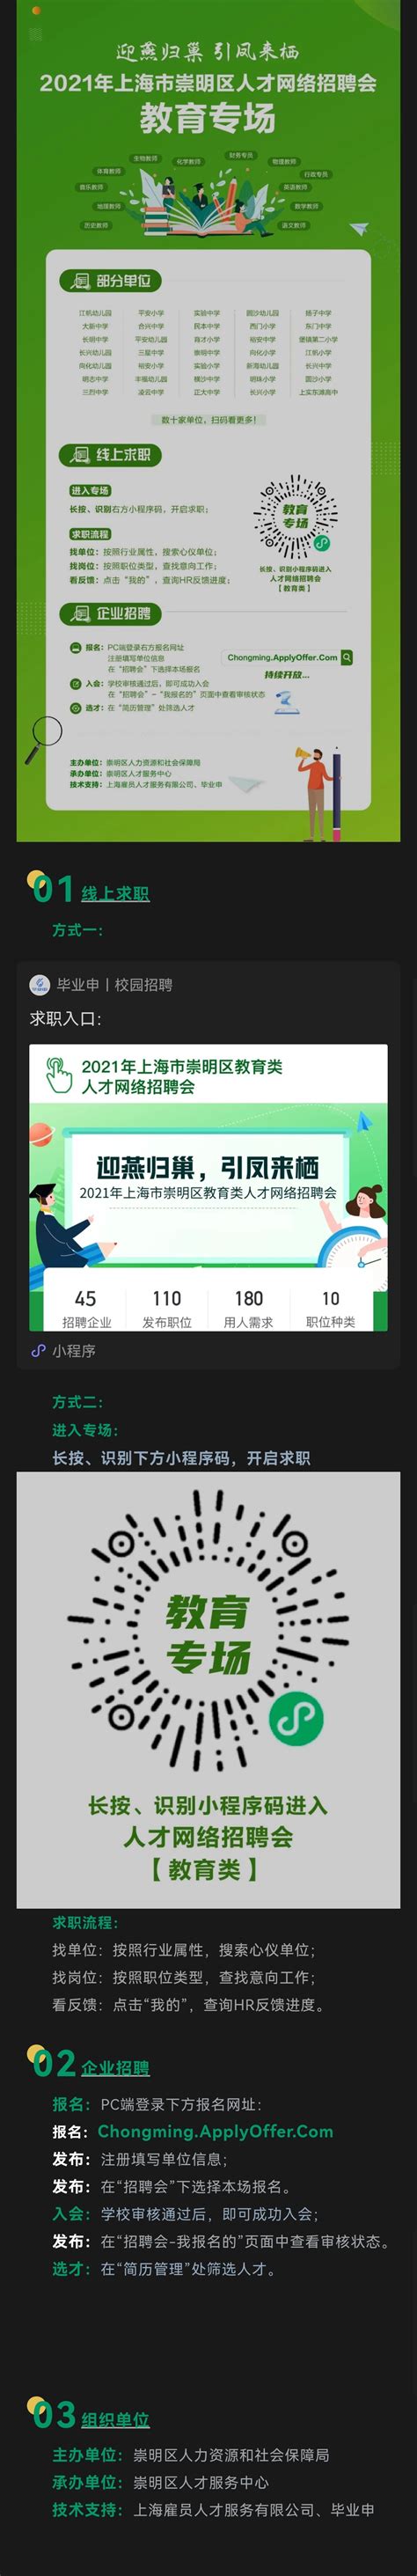 上海市崇明区人才系列网络招聘信息-安徽师范大学法学院